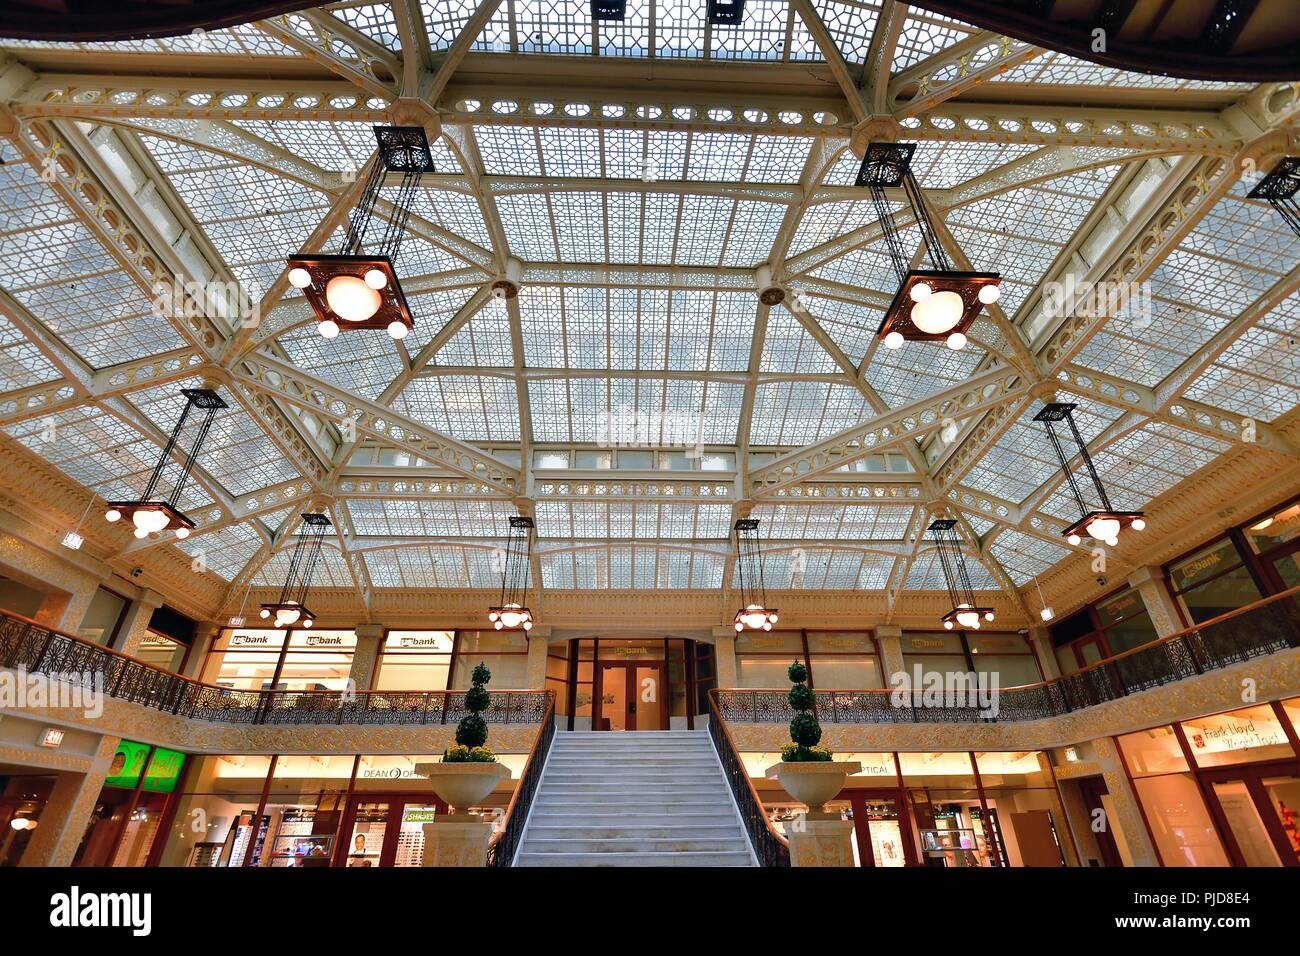 Chicago, Illinois, USA. Das Oberlicht und einer der künstlerischen Treppen und mezzazine in Sicht in der Lobby des Rookery Building. Stockfoto